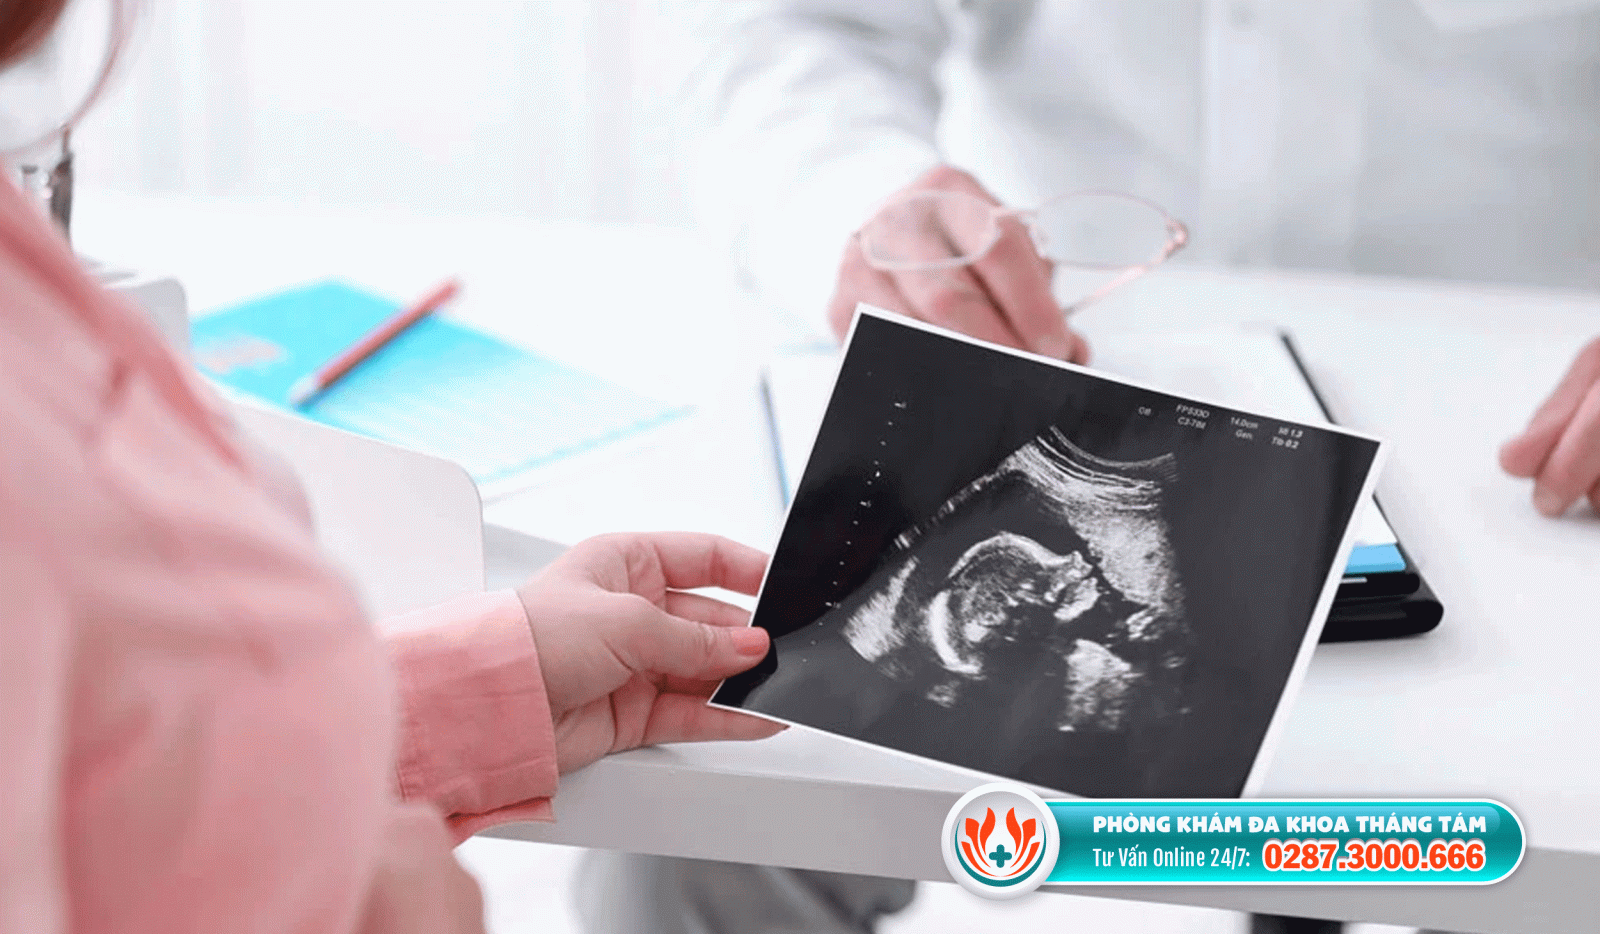 Những yếu tố giúp cho quá trình bỏ thai diễn ra an toàn